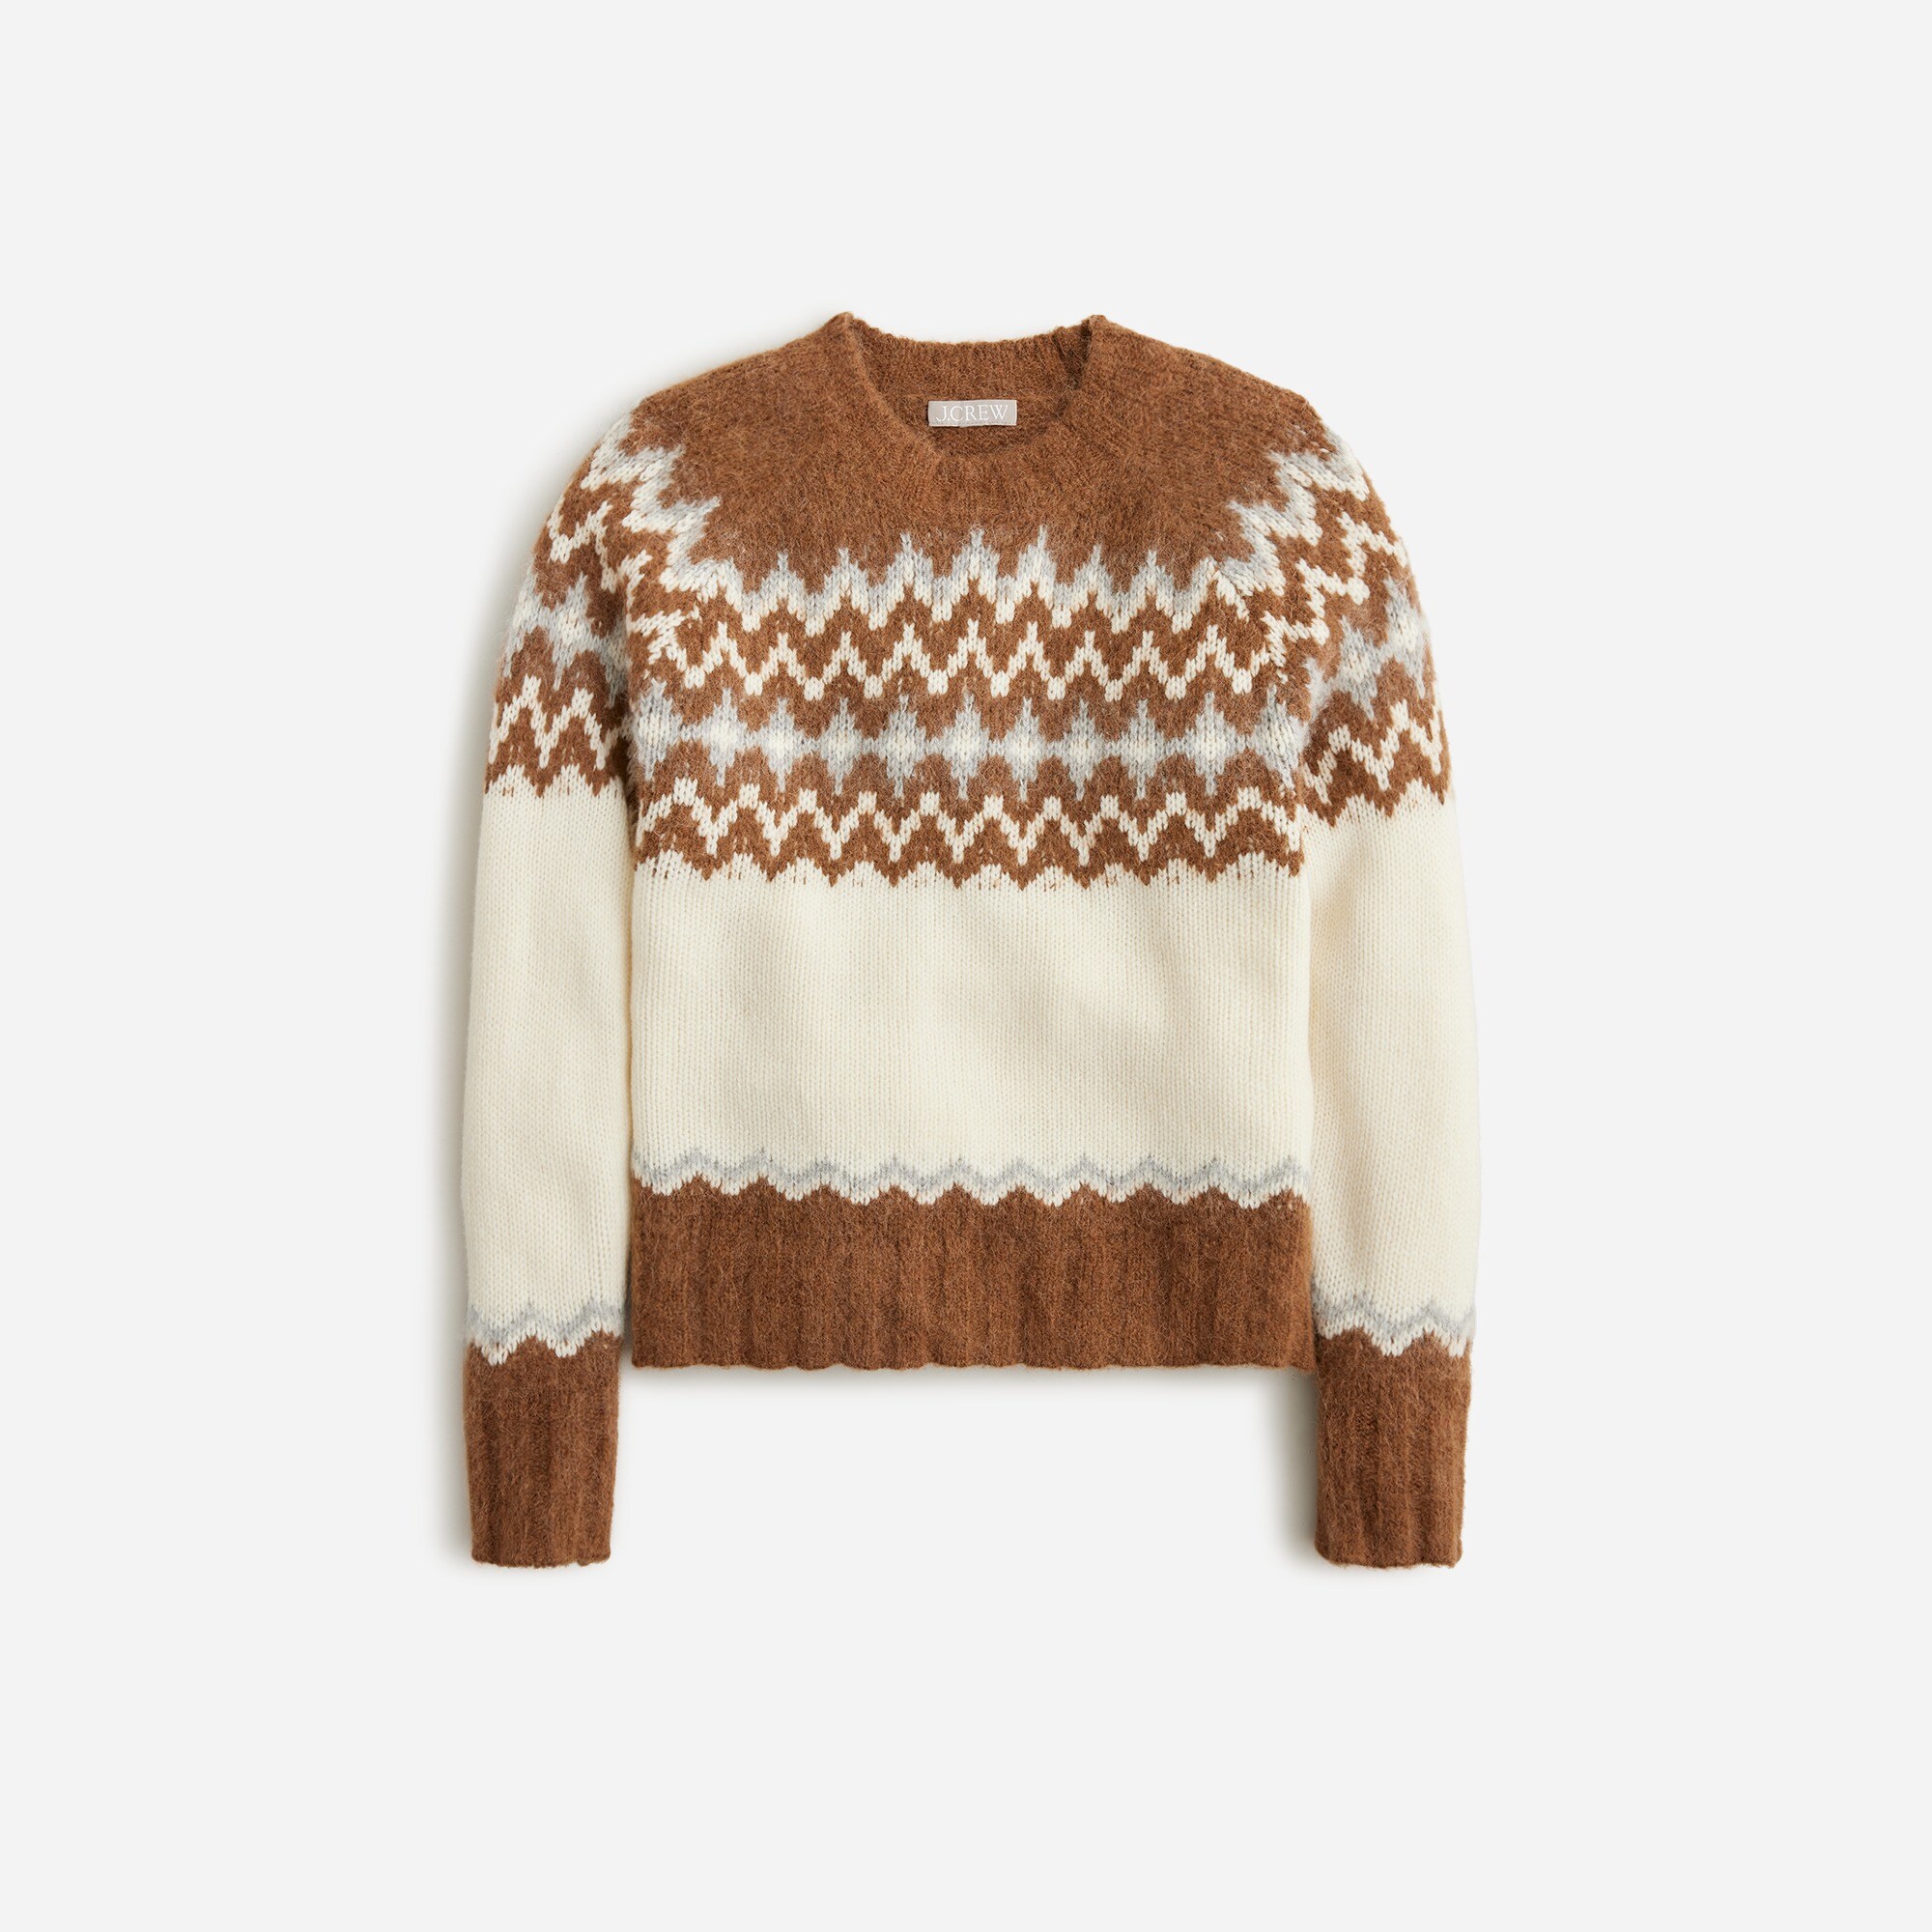  Fair Isle crewneck sweater in brushed yarn